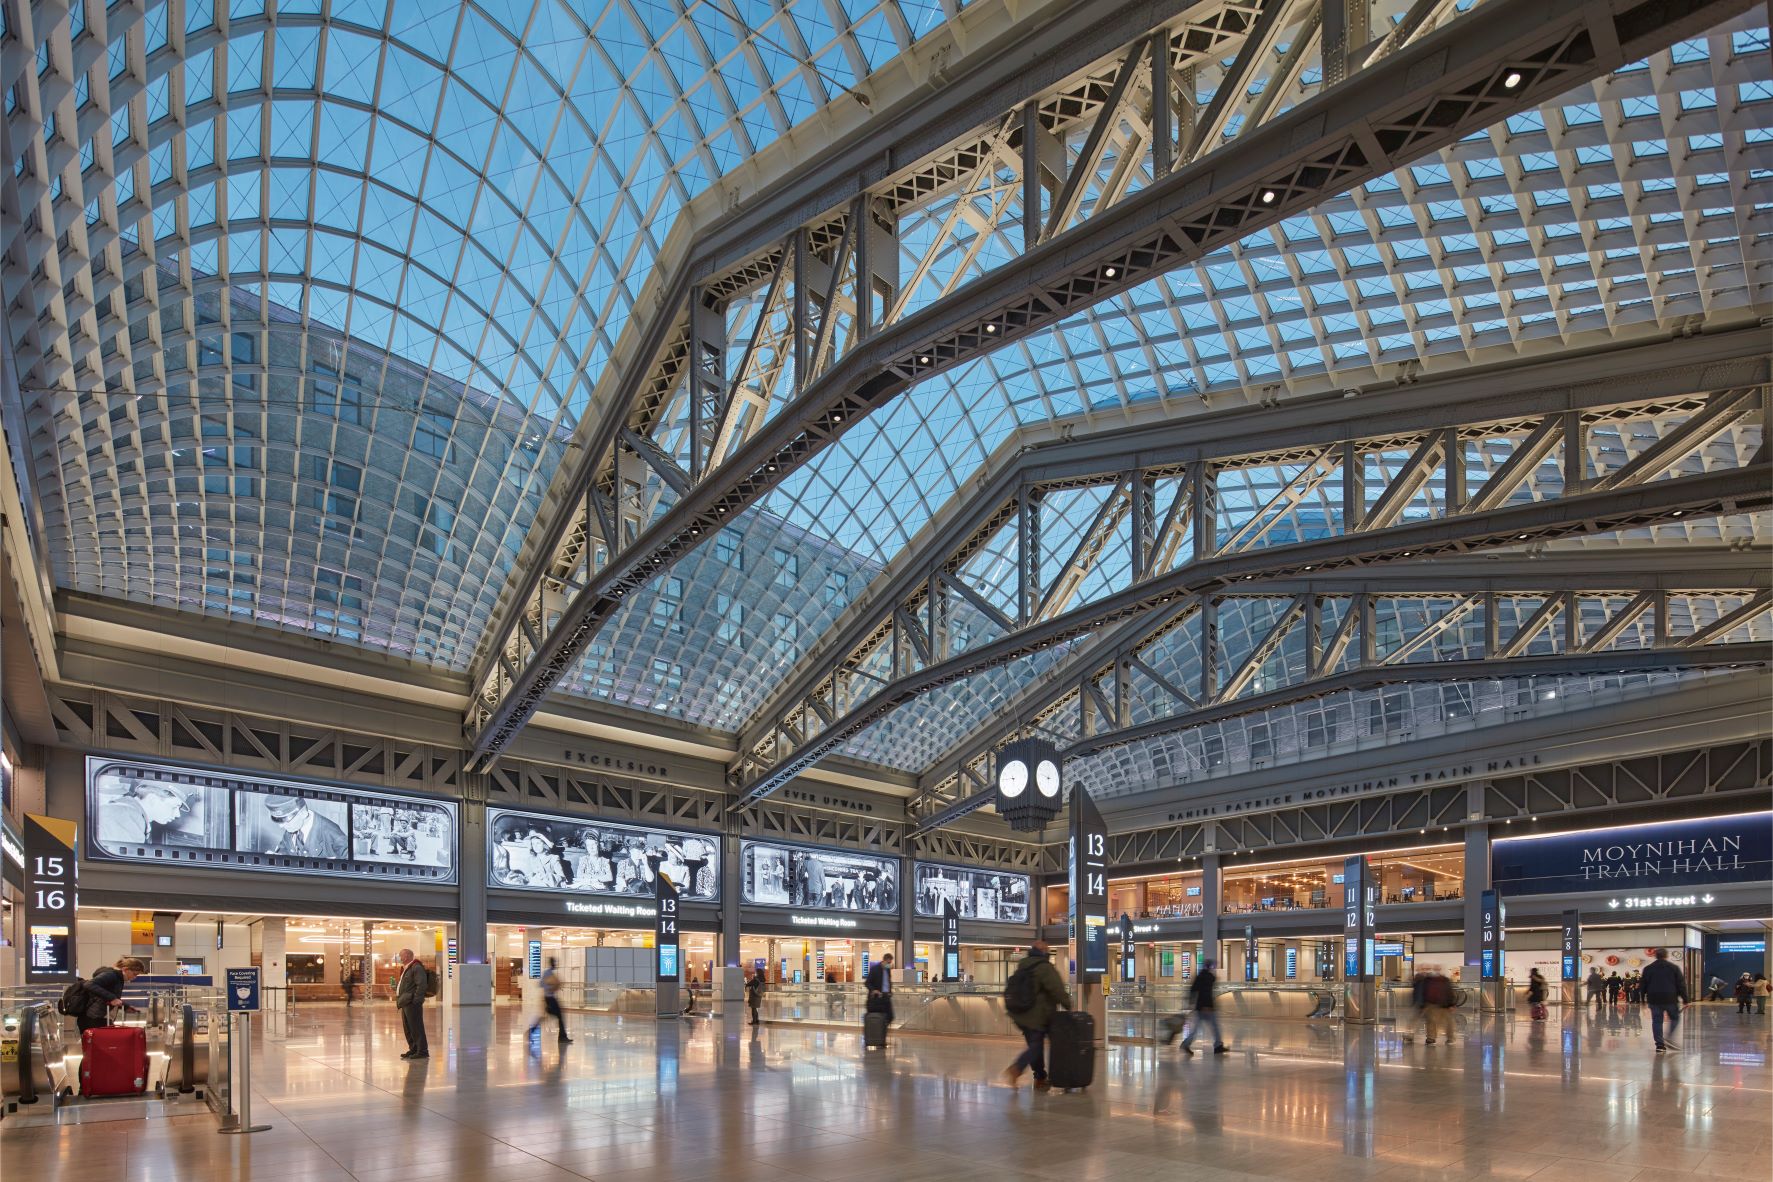 Moynihan Train Hall 以原建筑的大型钢骨衍架为基础，建构出展现流线波动美感的巨型天窗屋顶。